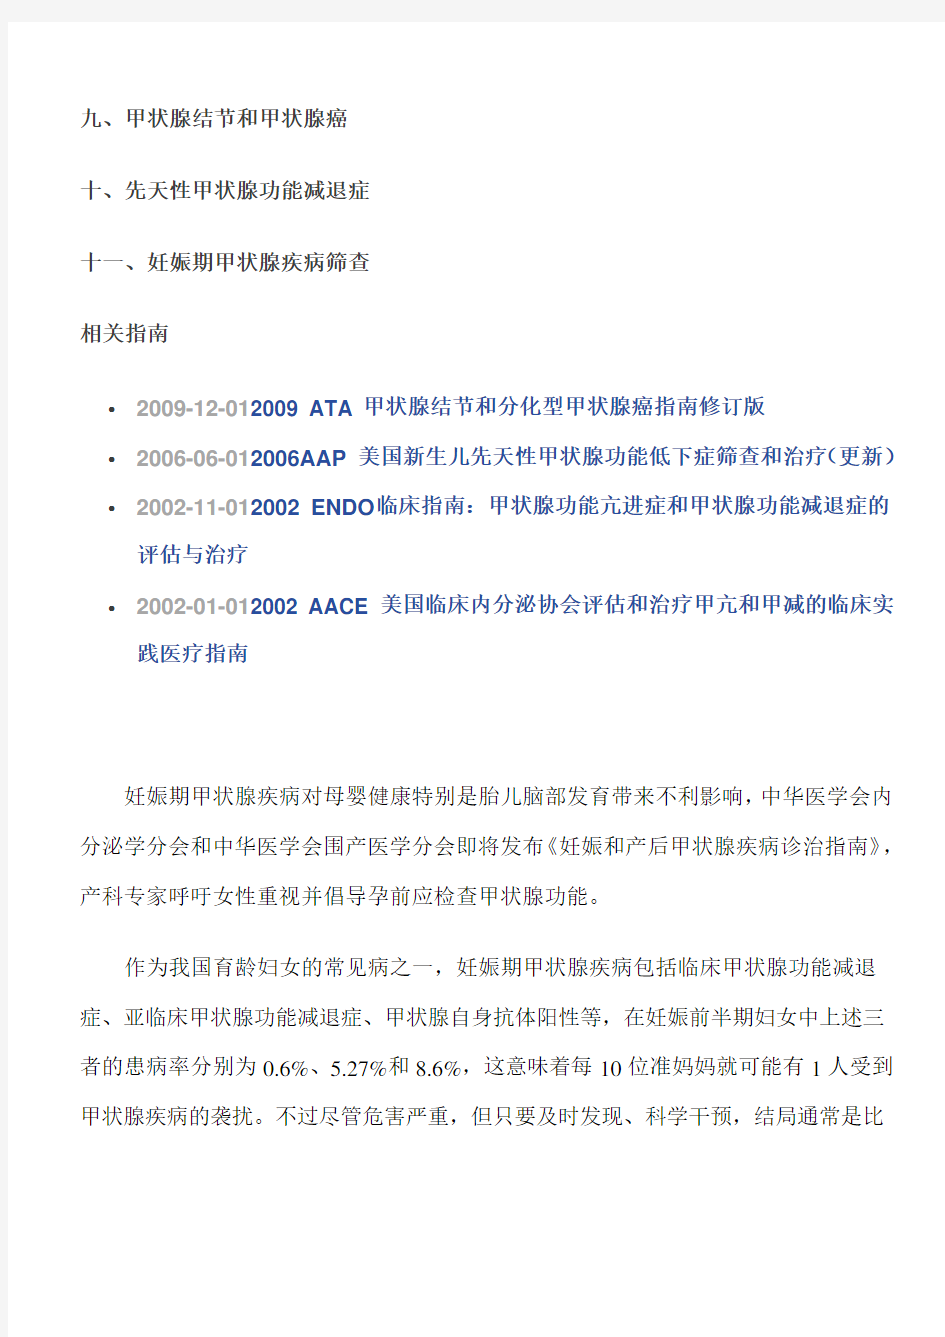 2012-妊娠和产后甲状腺疾病诊治指南(中国)